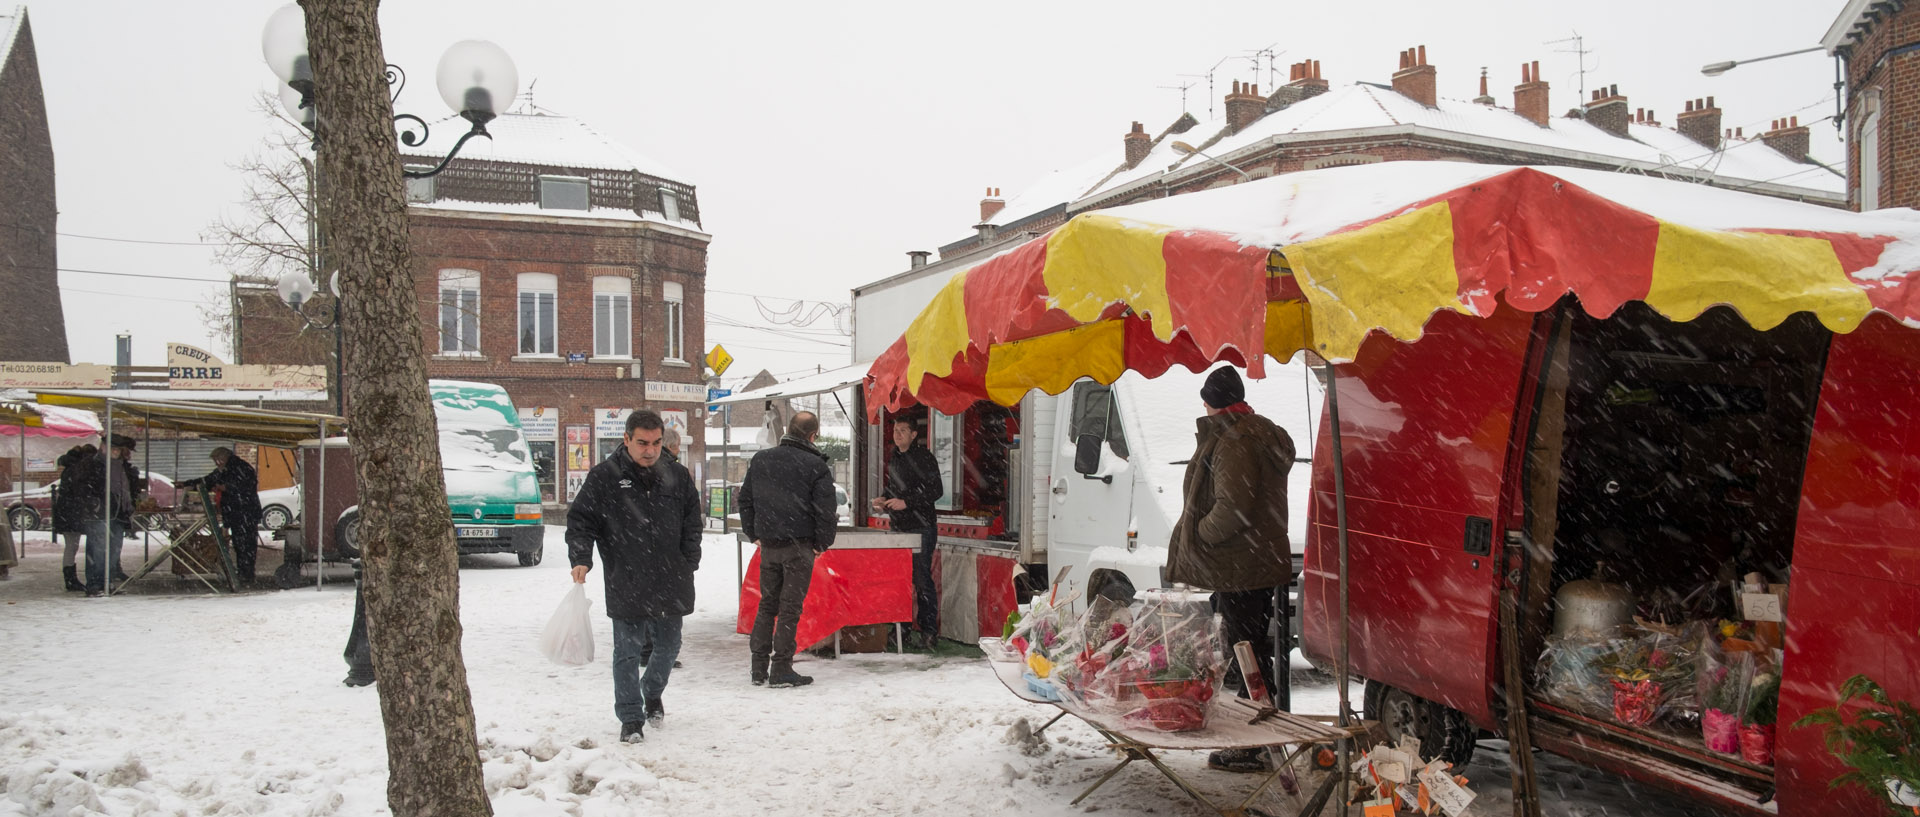 Le marché Saint-Pierre sous la neige, place de la Liberté, à Croix.